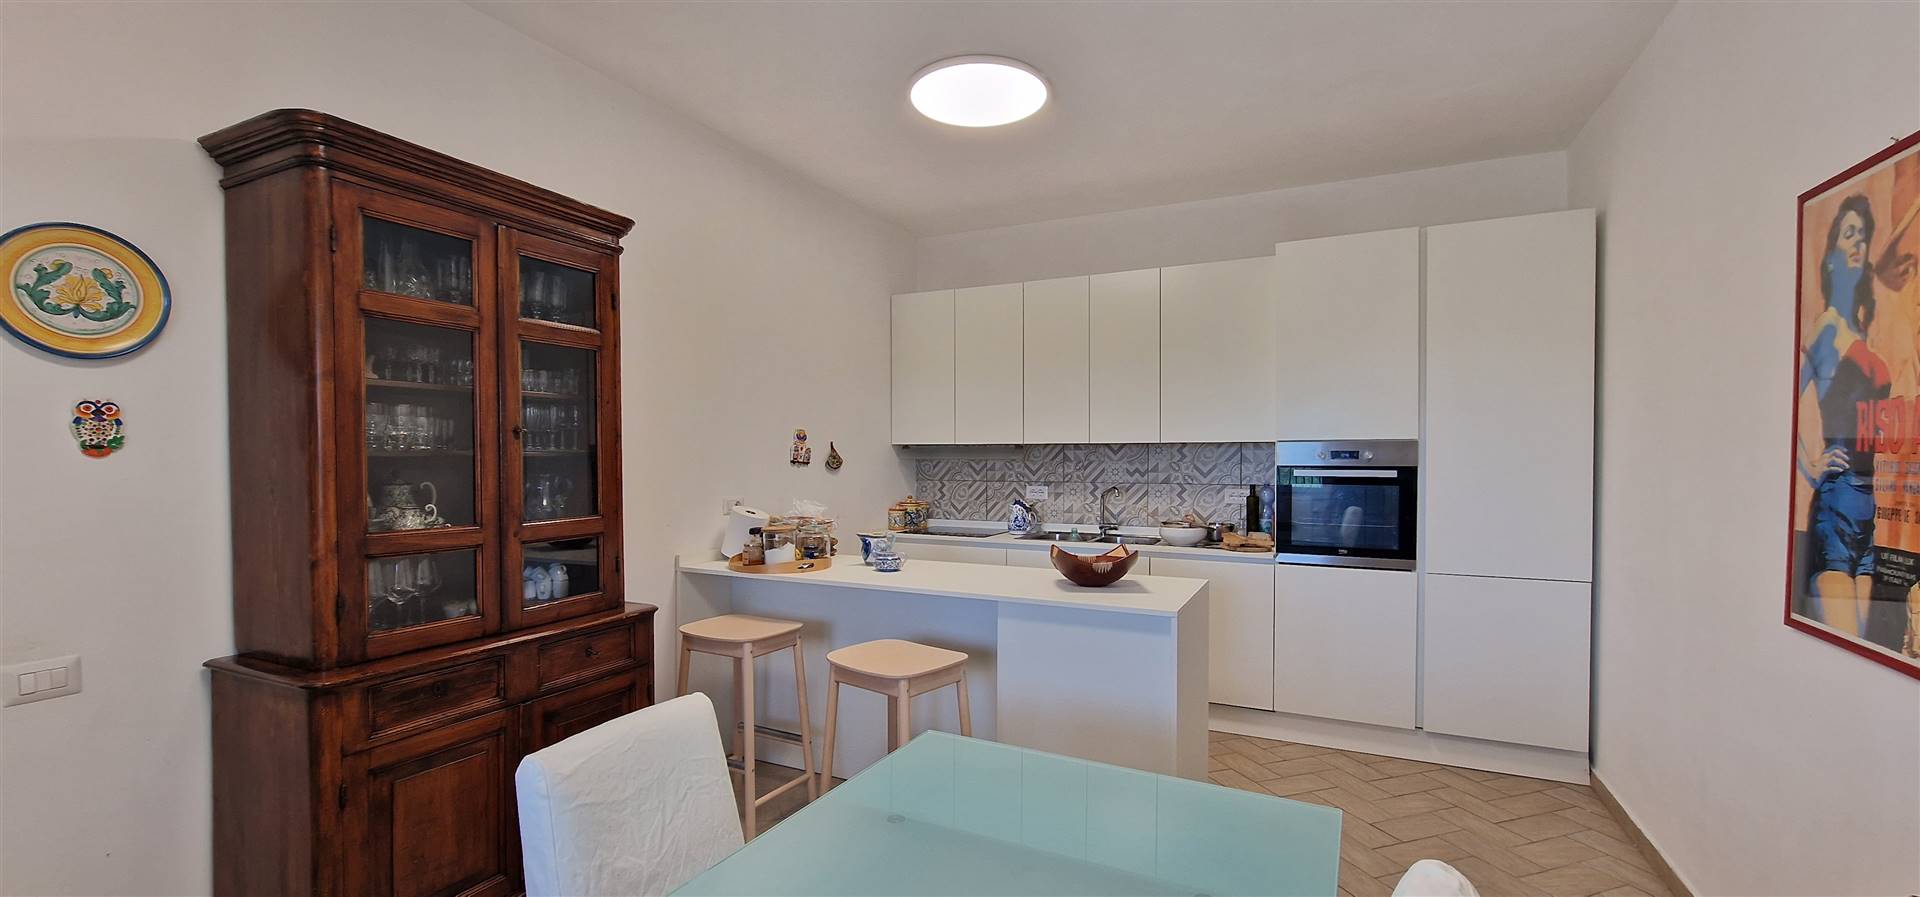 Appartamento ristrutturato in zona Borgo Carige a Capalbio